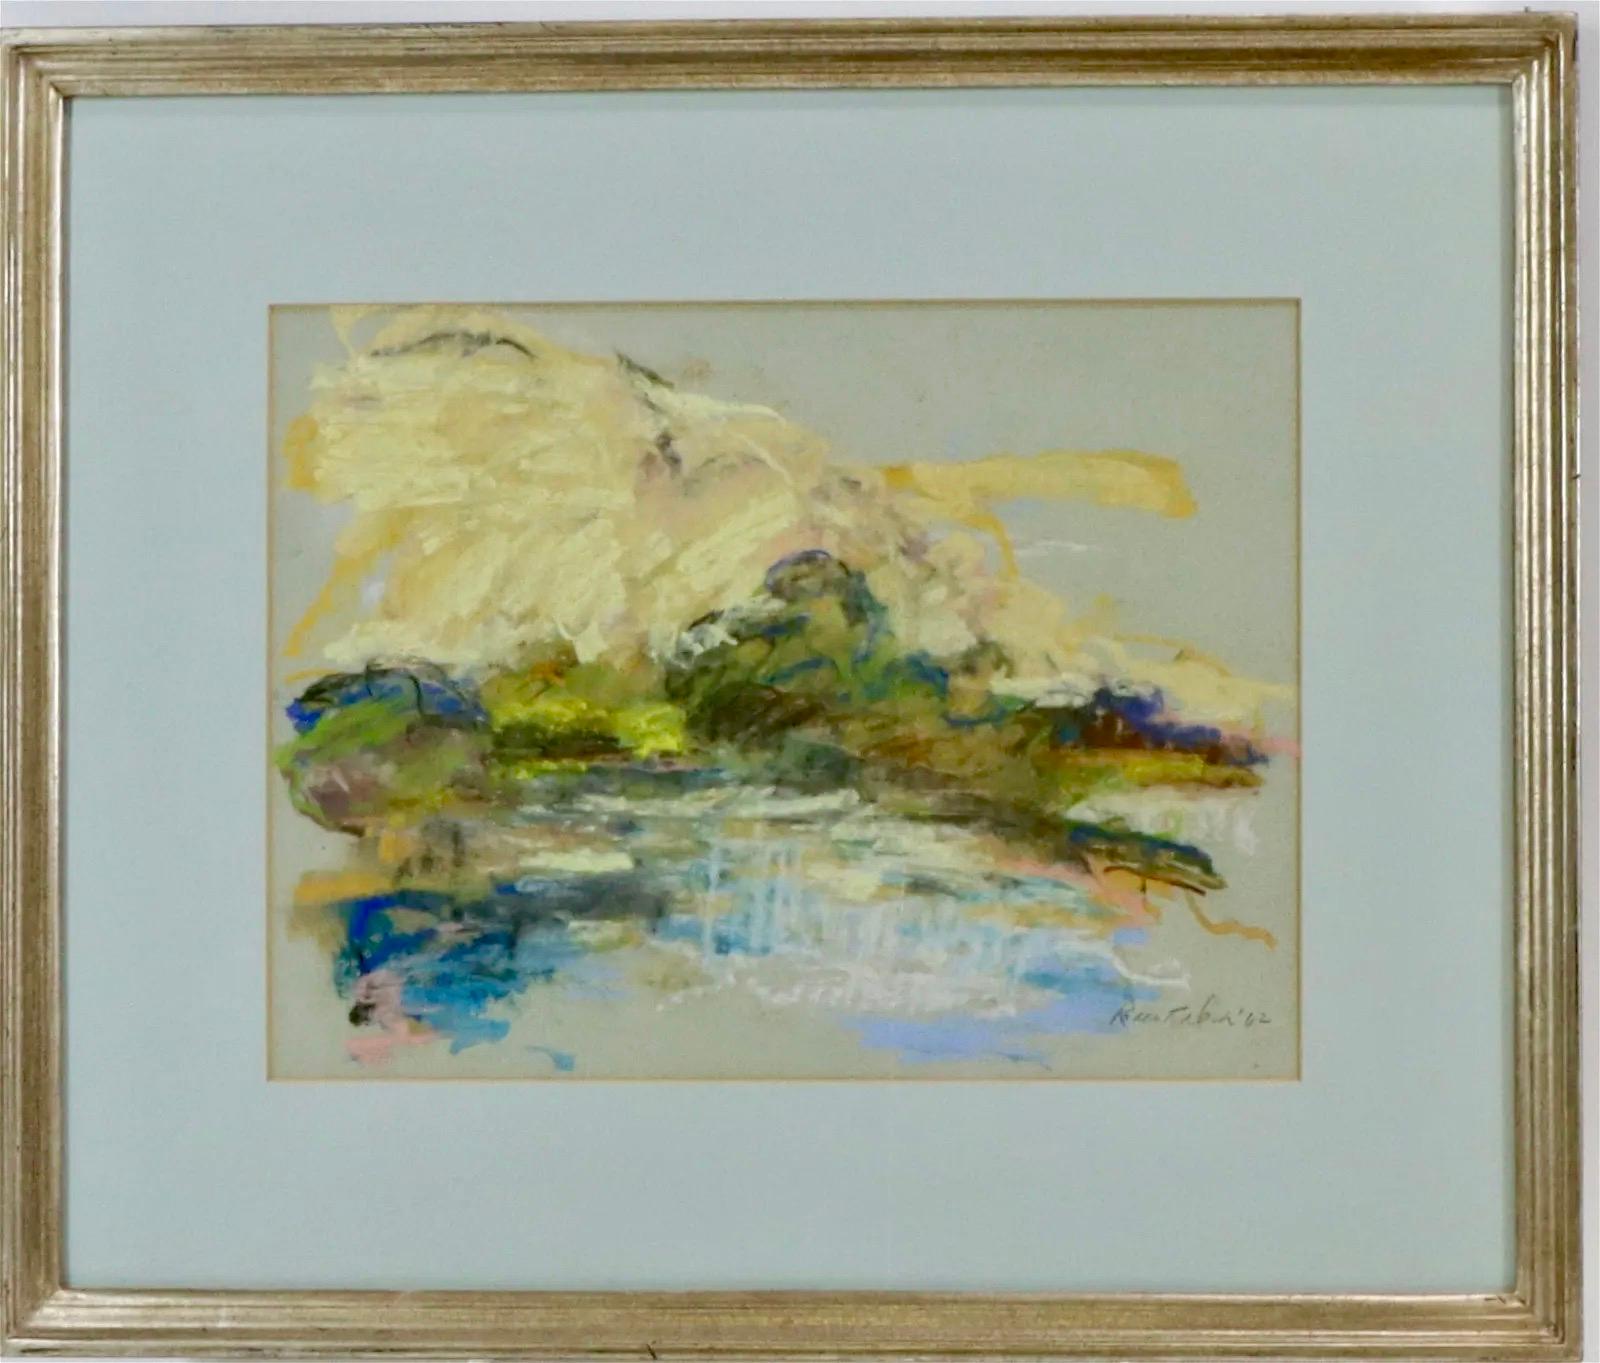 Abstrakte Landschaft Mitte des 20. Jahrhunderts Arbeit auf Papier Hamptons, NY Zeichnung Pastell. Signiert und datiert '62 unten rechts.  9 x 12 Zoll (Sicht) und 15. 1/2 x 18 1/2 Zoll gerahmt.

BIO
Robert Dash ist für seine Hamptons-Gemälde bekannt.